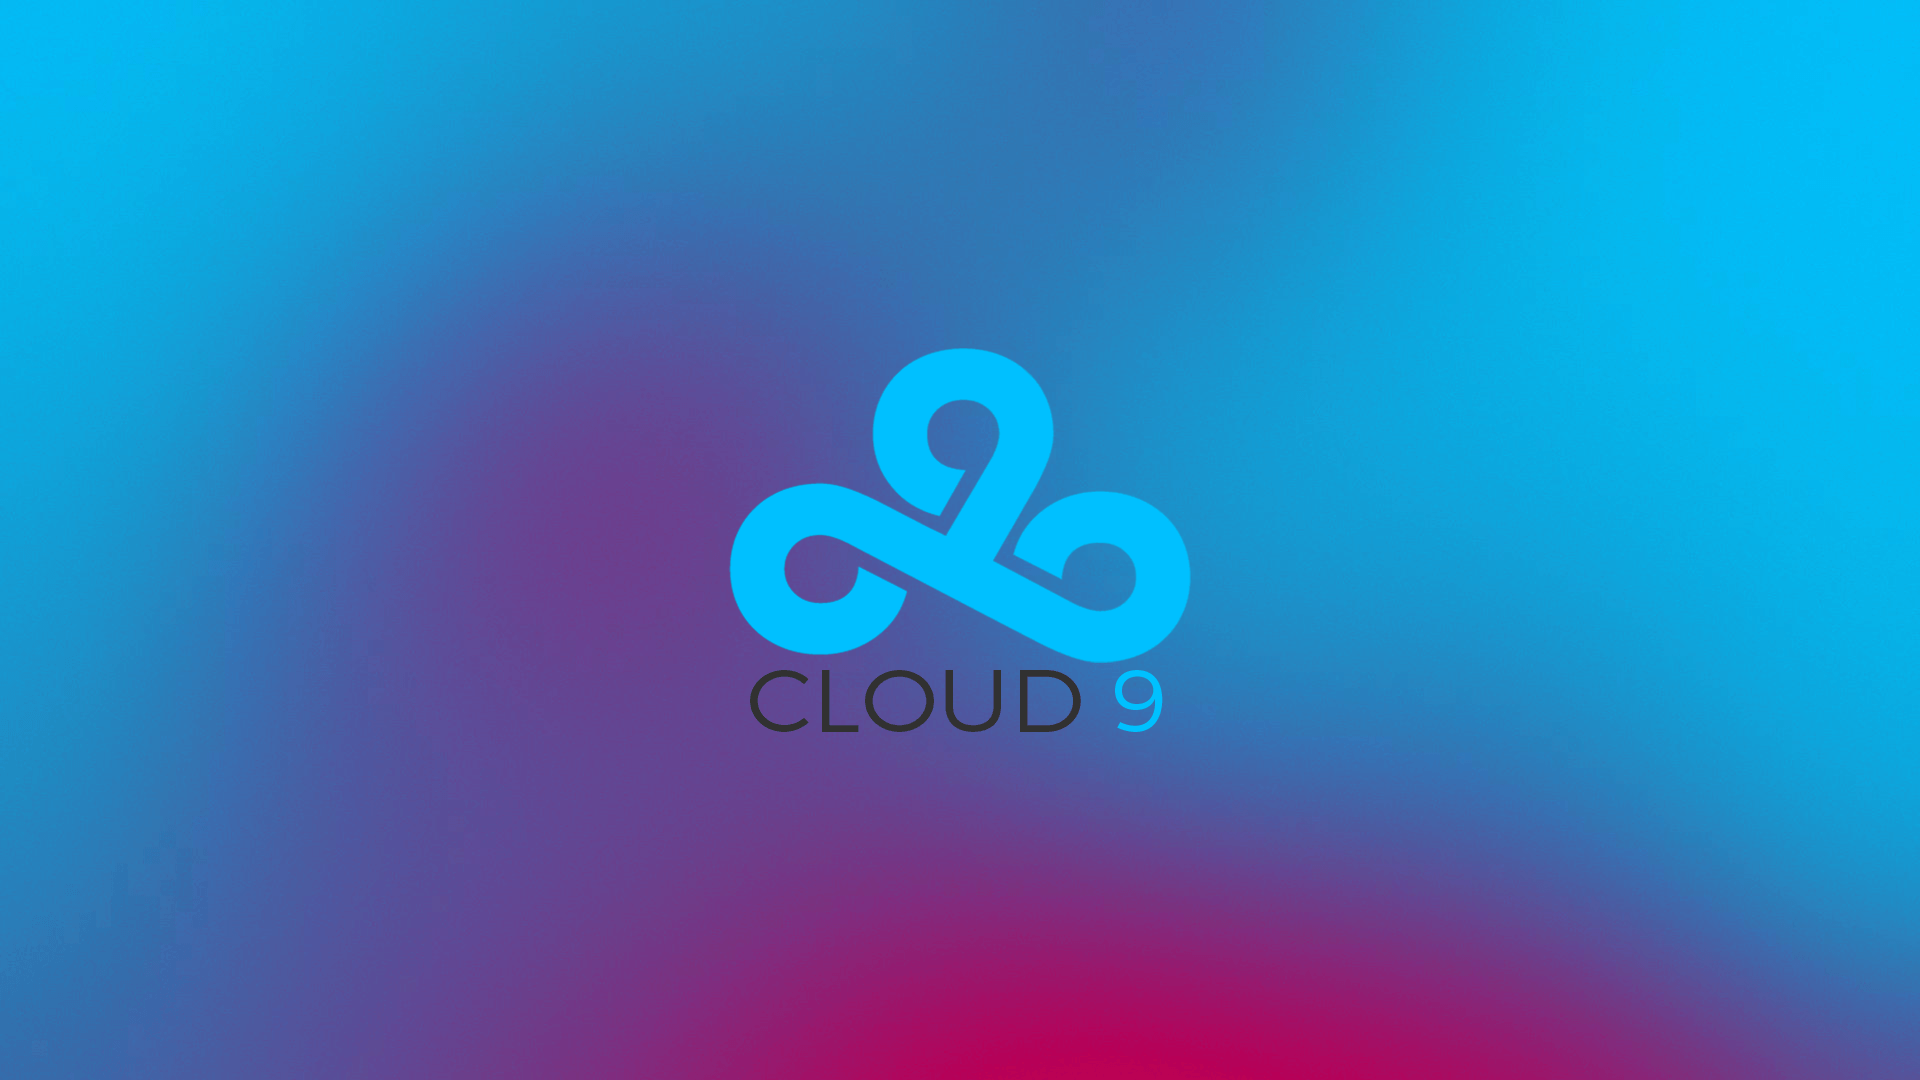 Cloud 9 Image